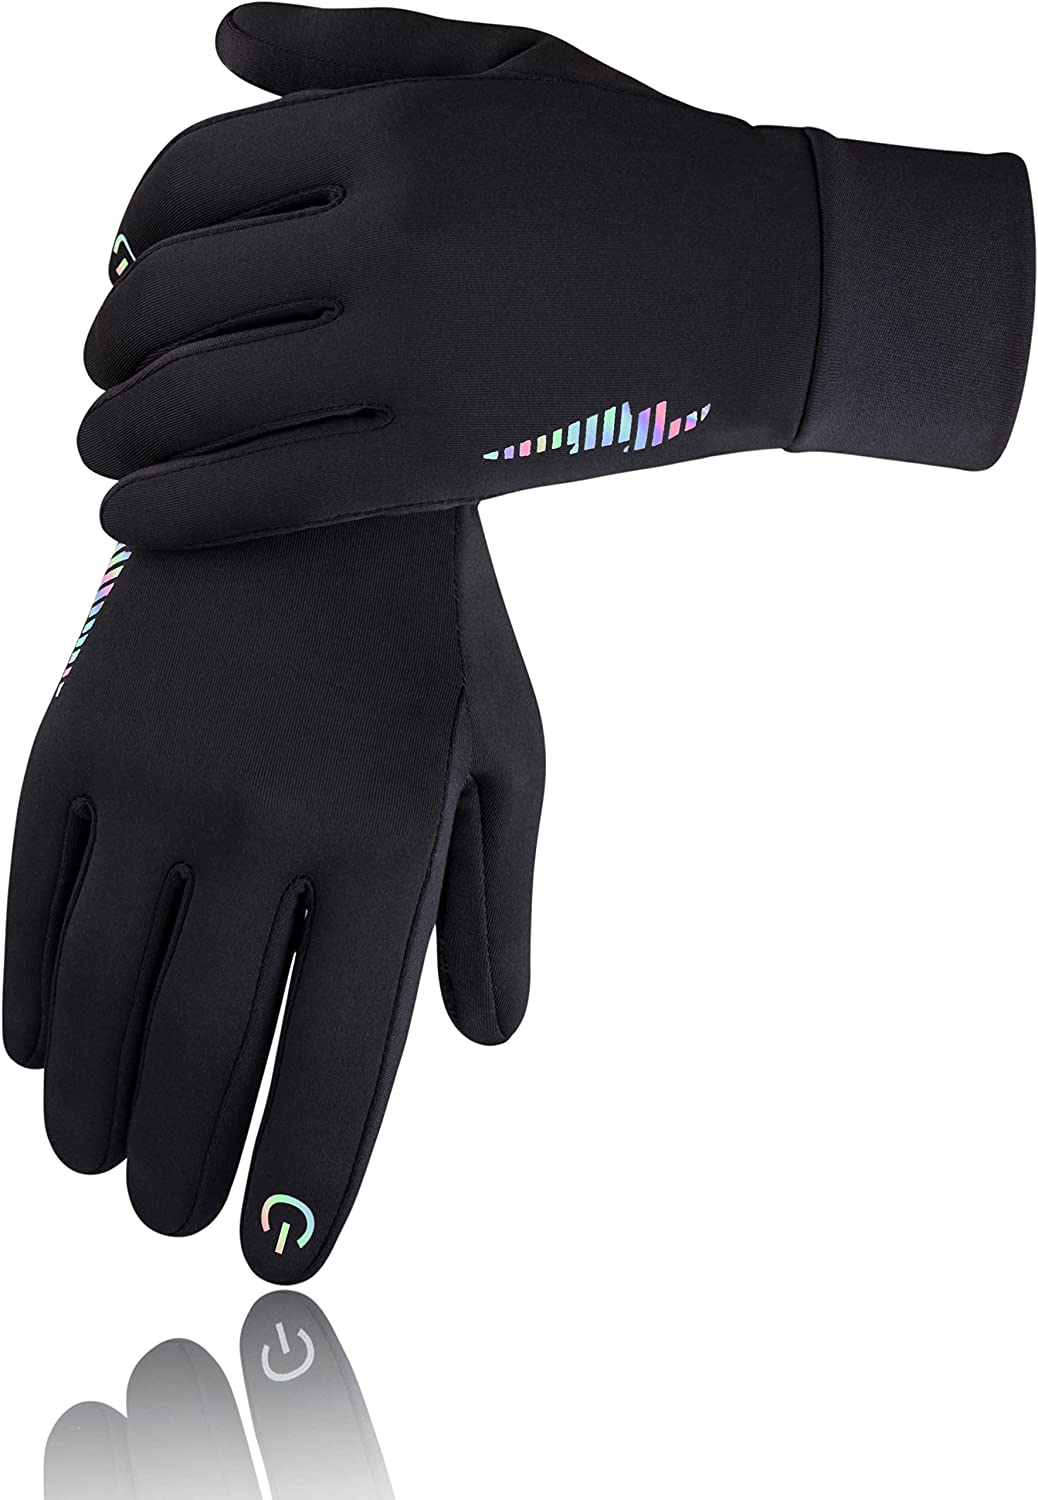 Bild zu Kinder Winter Thermo-Handschuhe Simari SMRG106 mit Touchscreen-Funktion für 8,99€